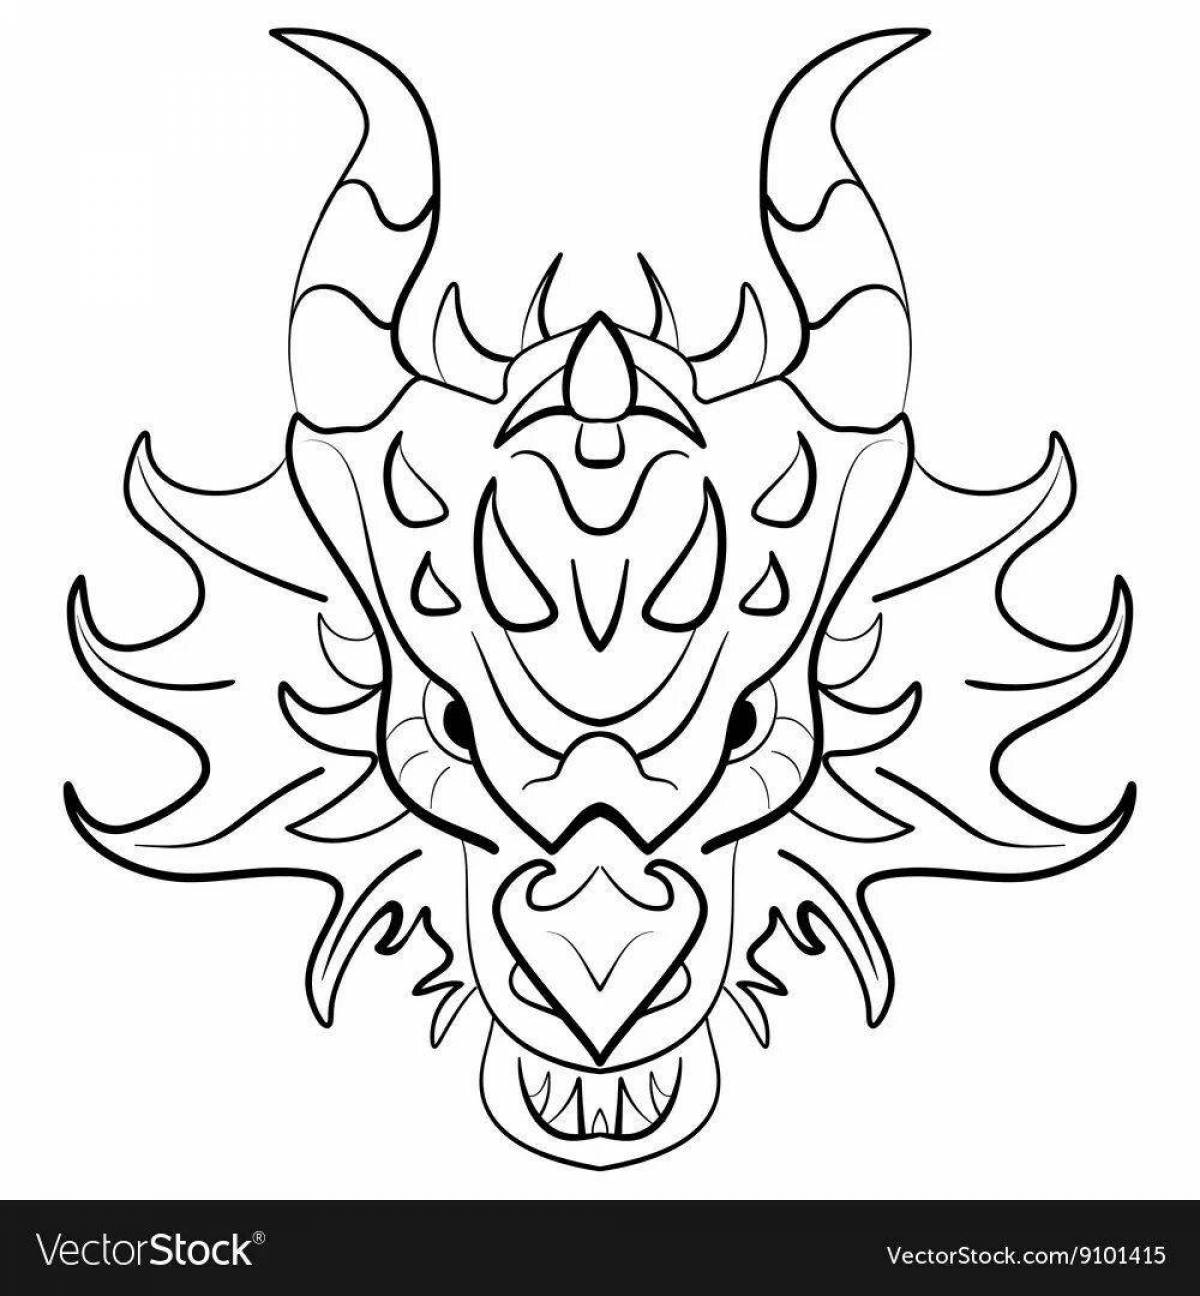 Generous dragon mask coloring